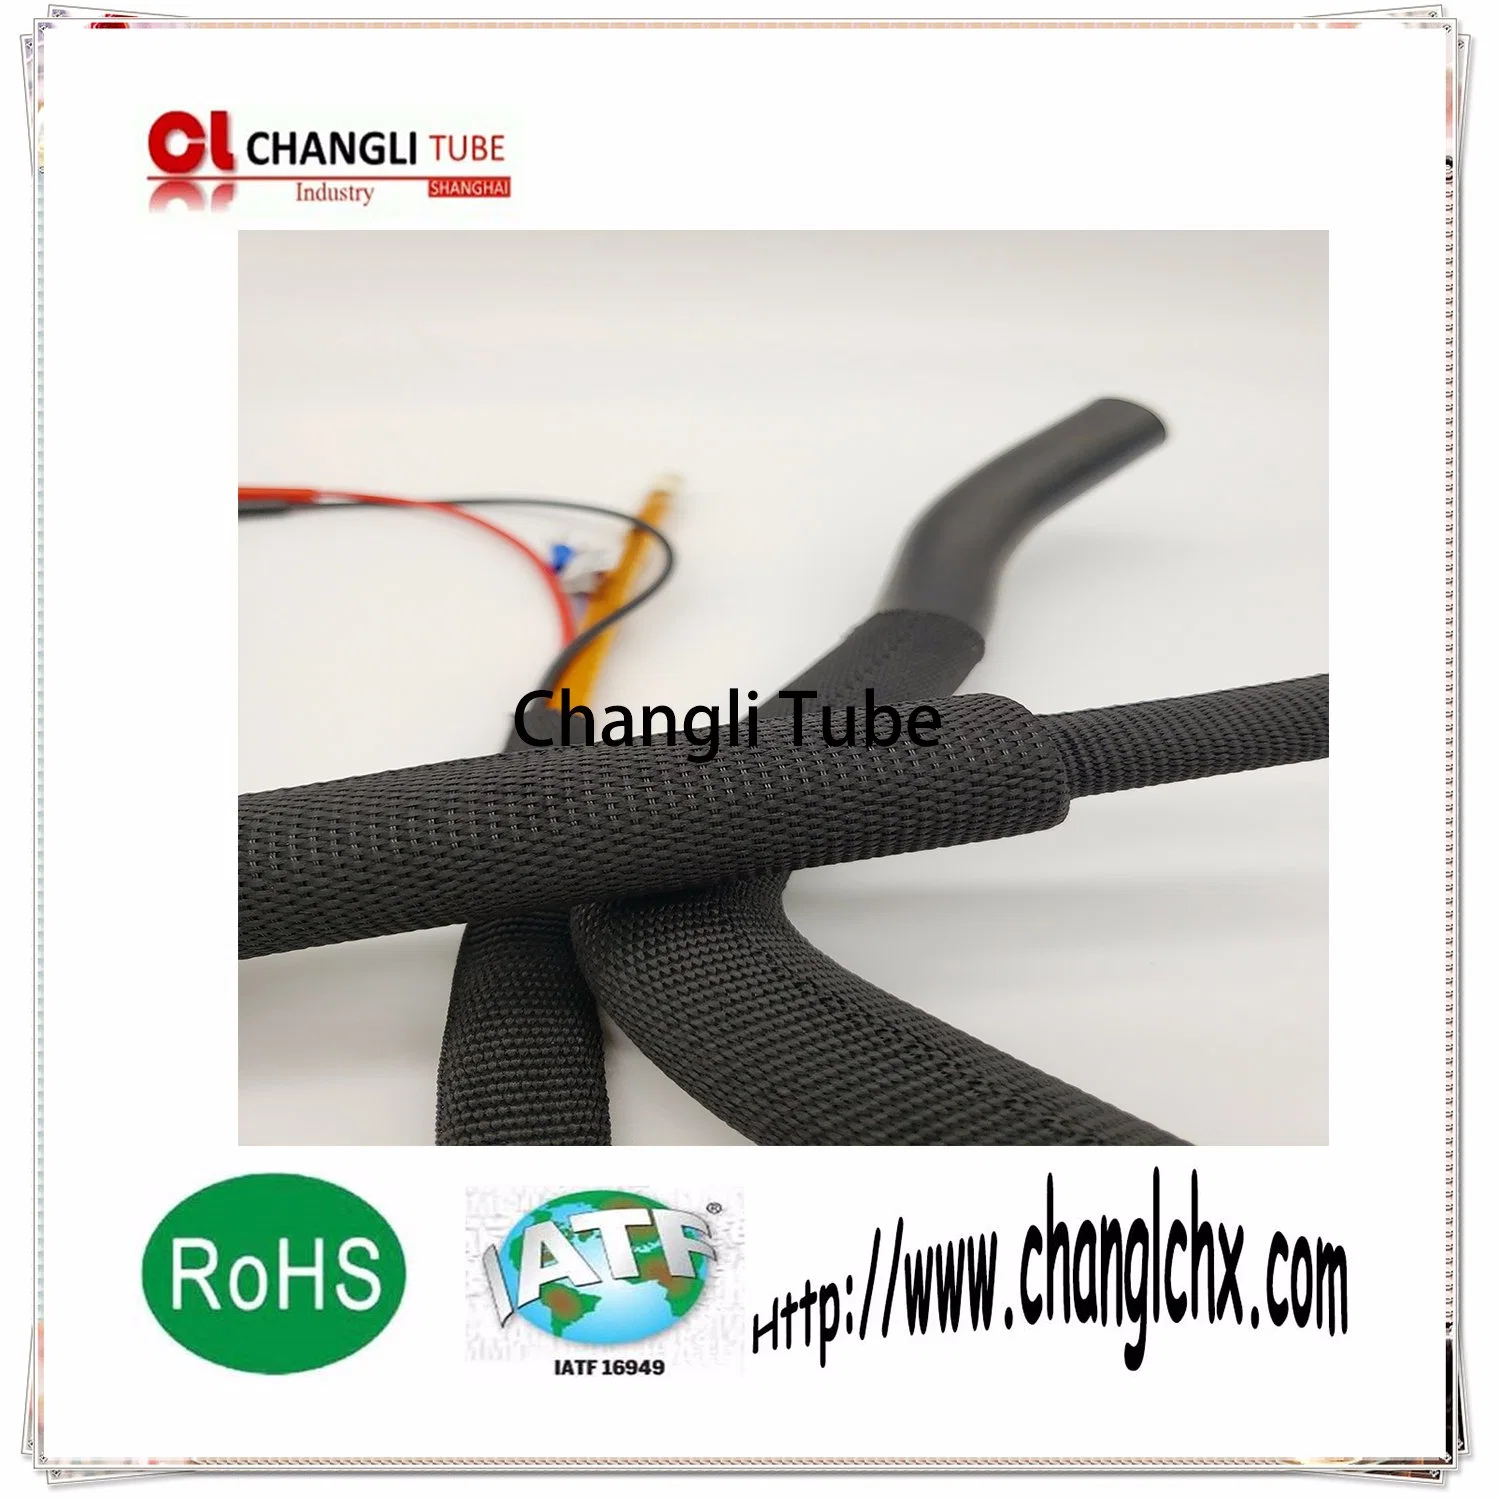 2: 1 Tejido Termoretráctil tubo protector utilizado en automóviles y de protección de cables